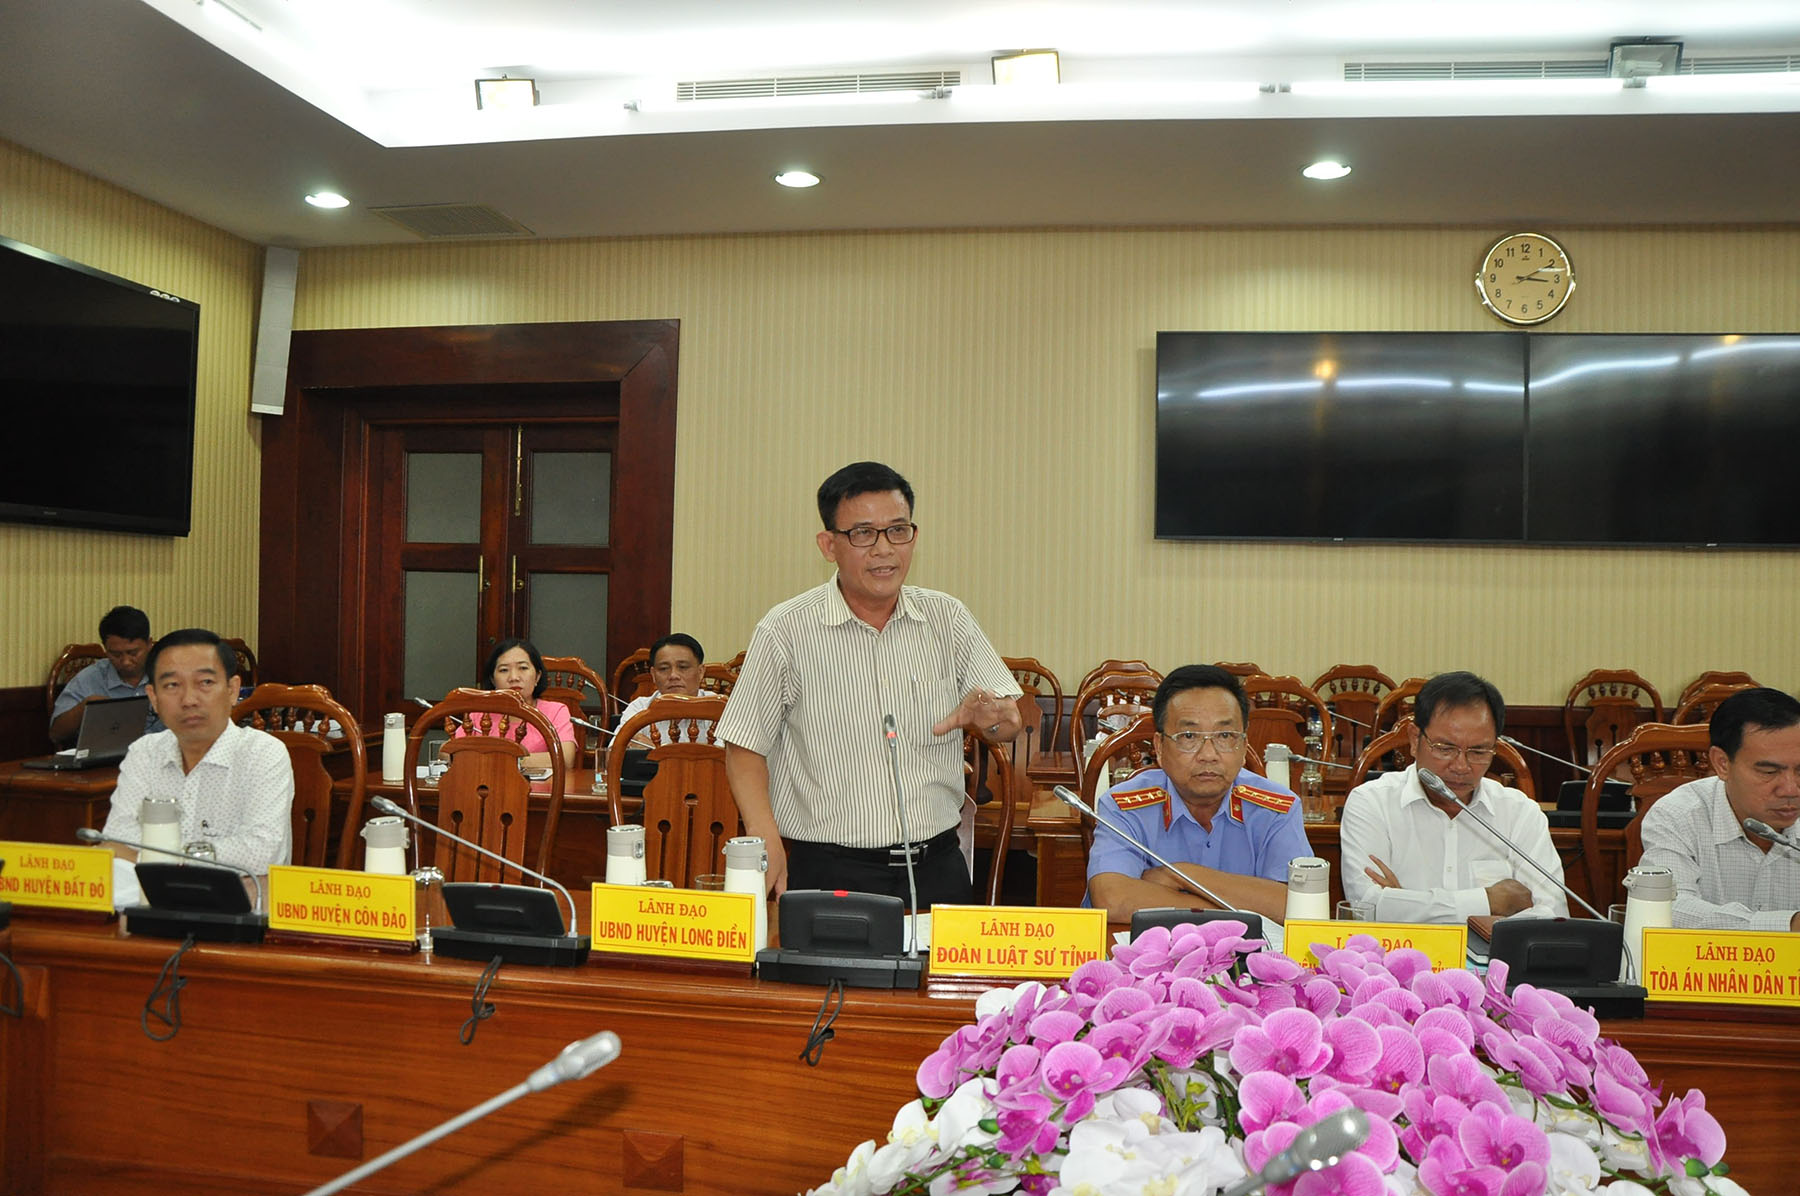 Luật sư Lưu Văn Tám, Đoàn Luật sư tỉnh phát biểu ý kiến tại hội thảo về các giải pháp nâng cao hiệu quả công tác THAHC.